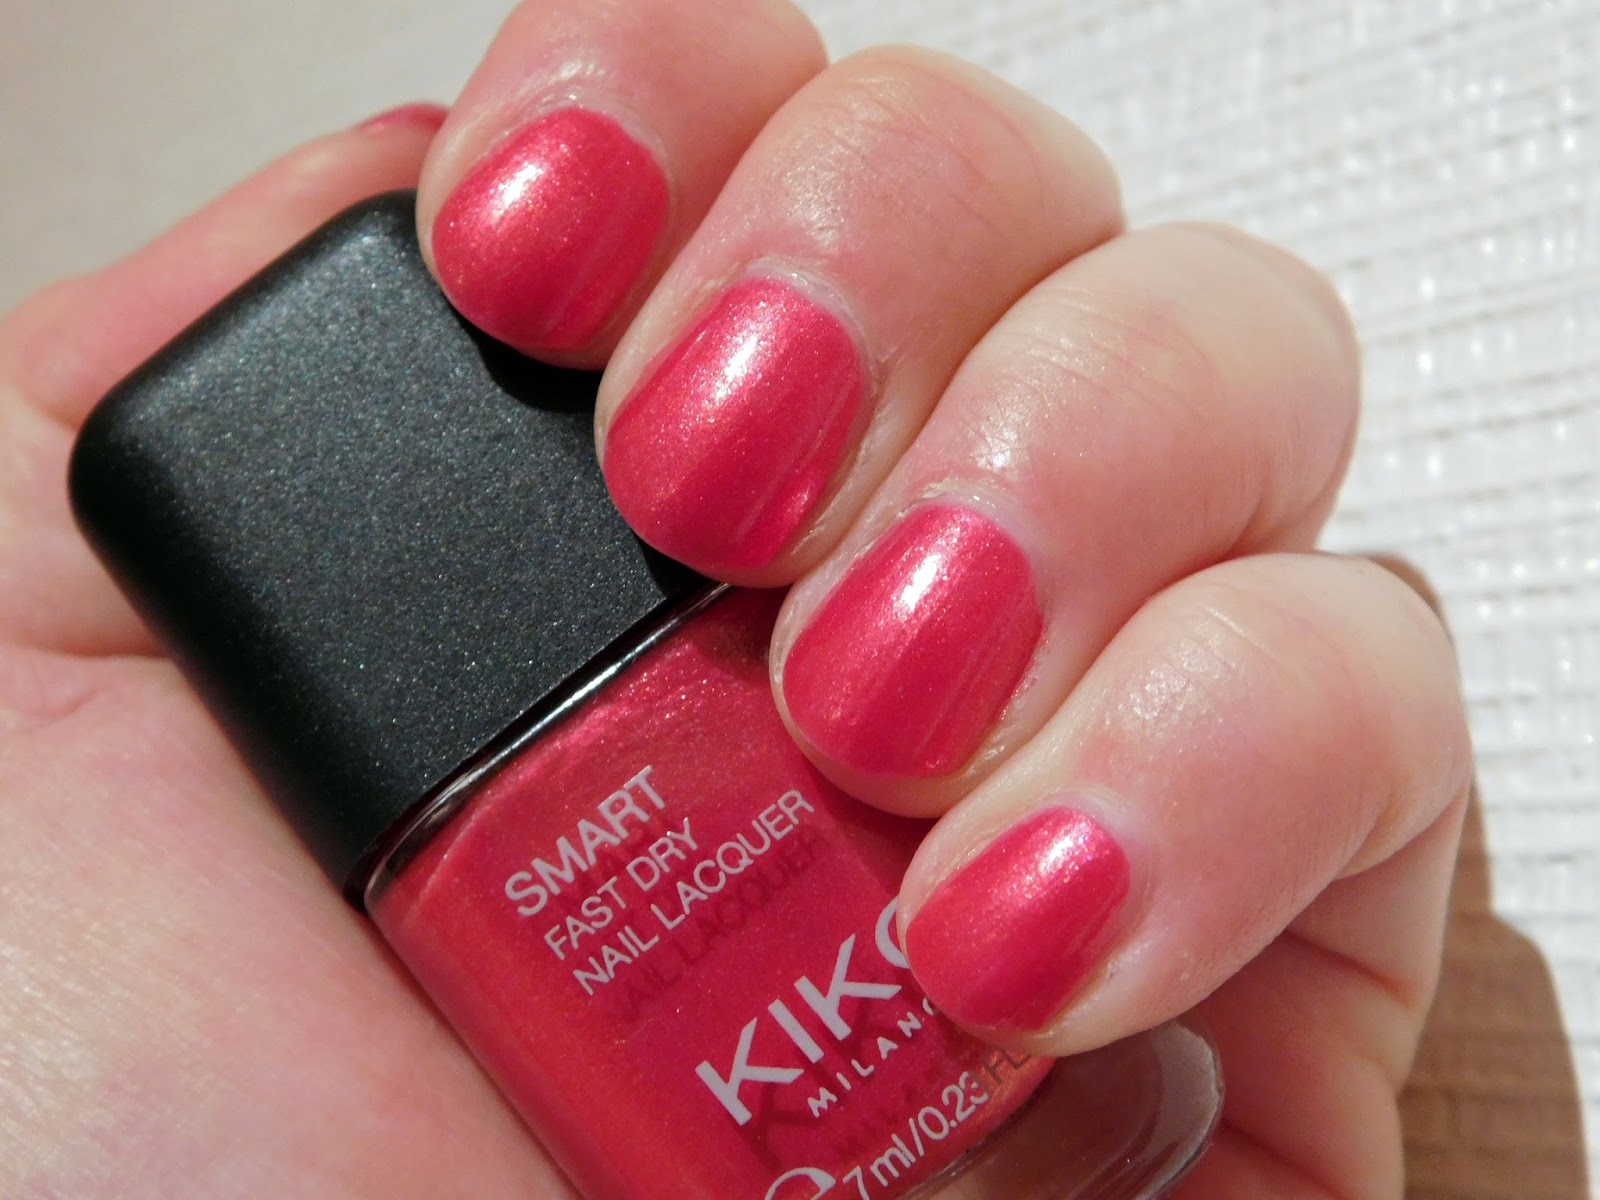 3. Kiko Milano Smart Nail Lacquer in "Coral Red" - wide 5